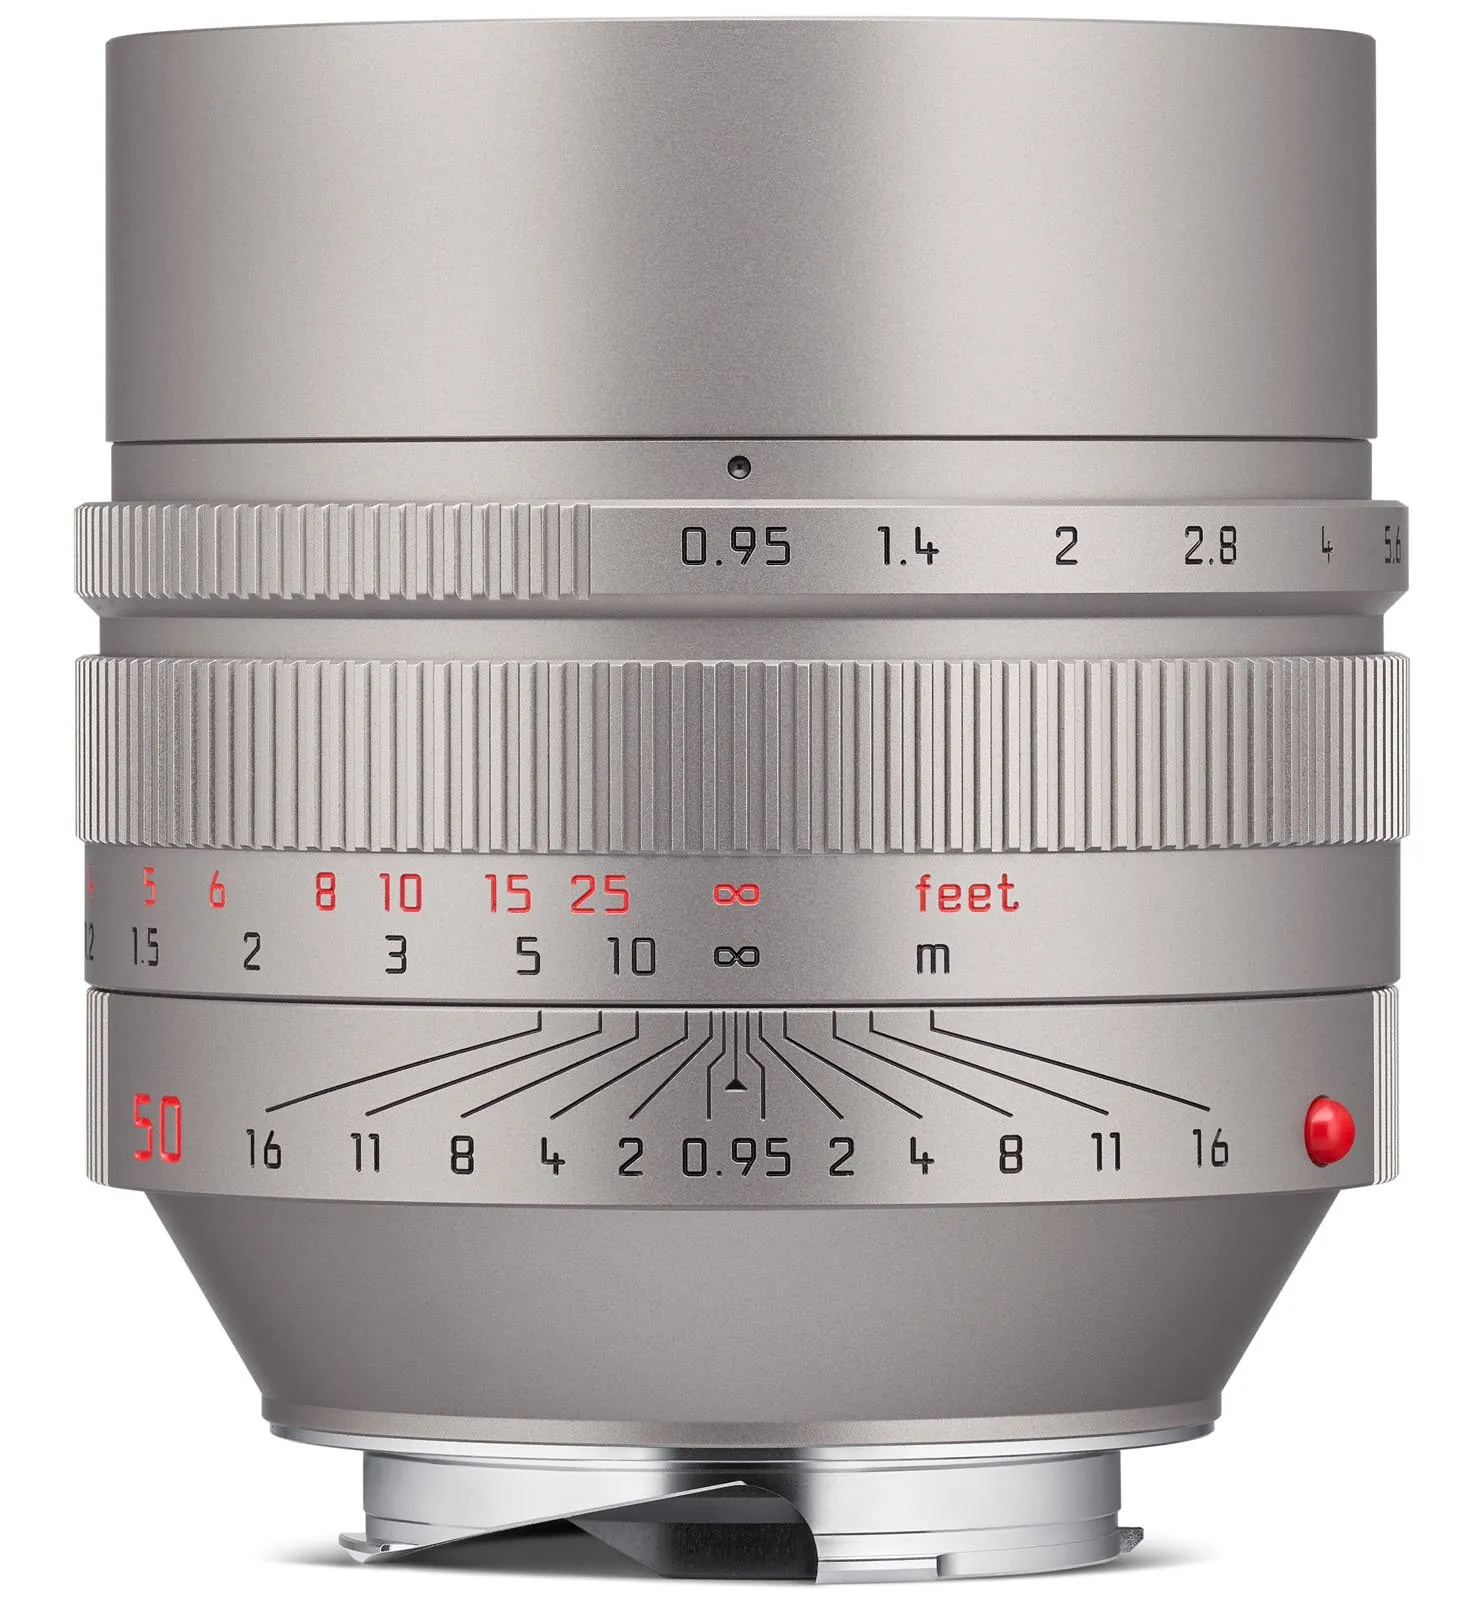 Leica ra mắt ống kính Leica Noctilux-M 50mm F0.95 ASPH Titan đặc biệt